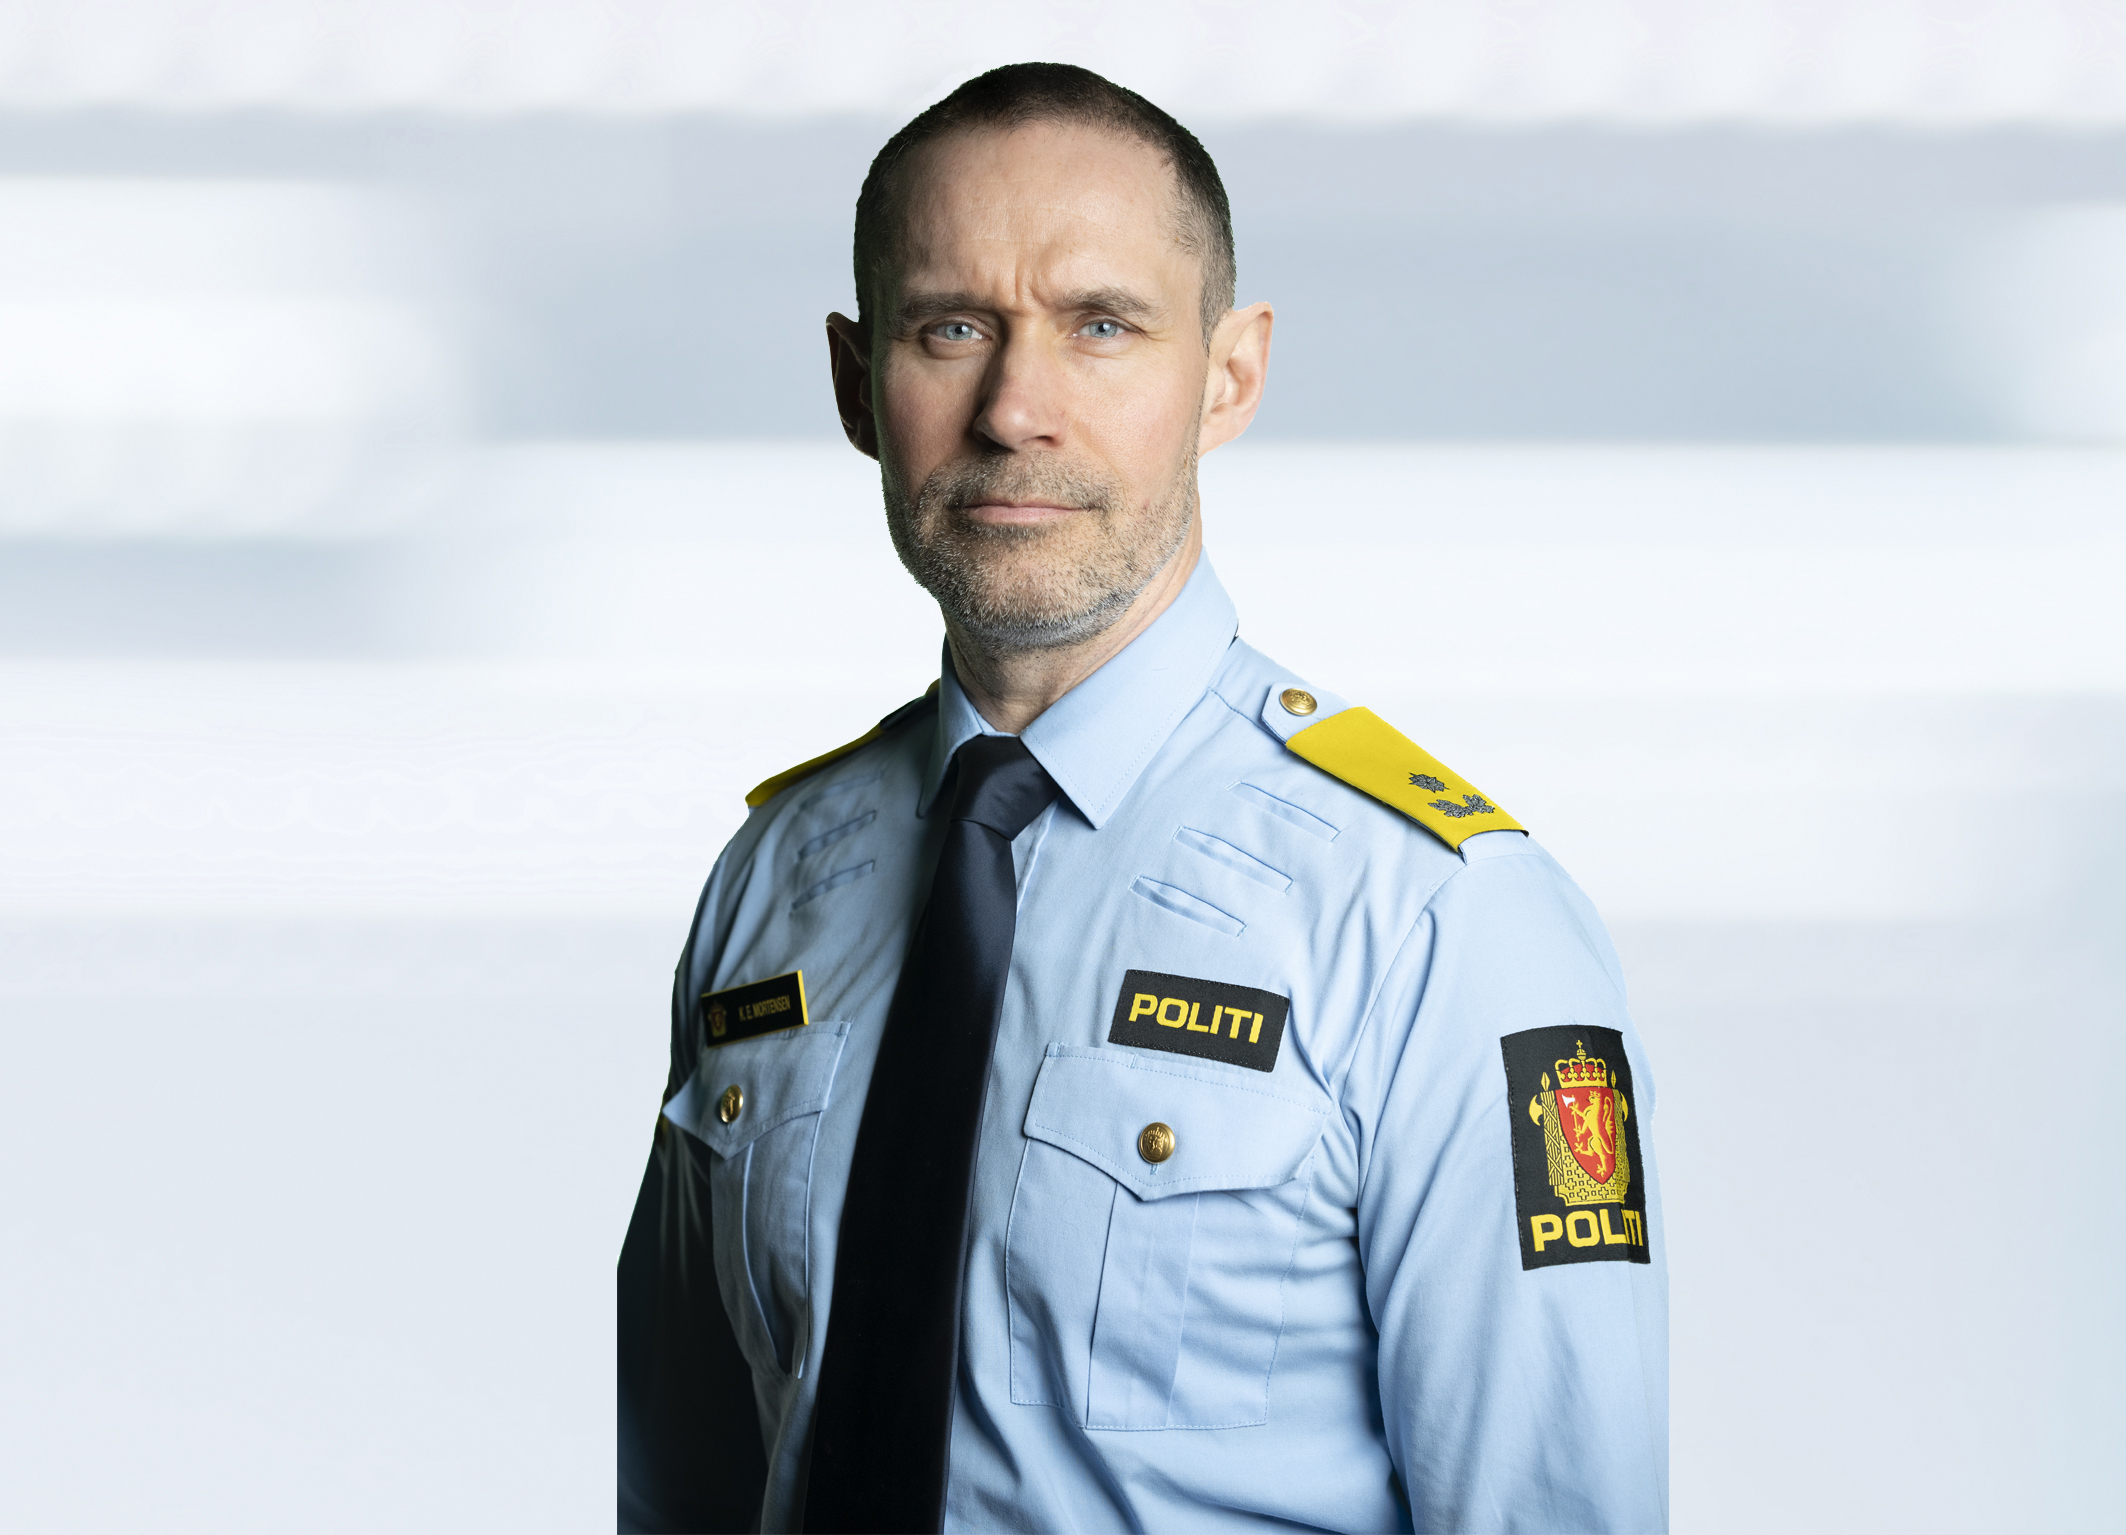 Assisterende rektor Kjell Eirik Mortensen i uniform